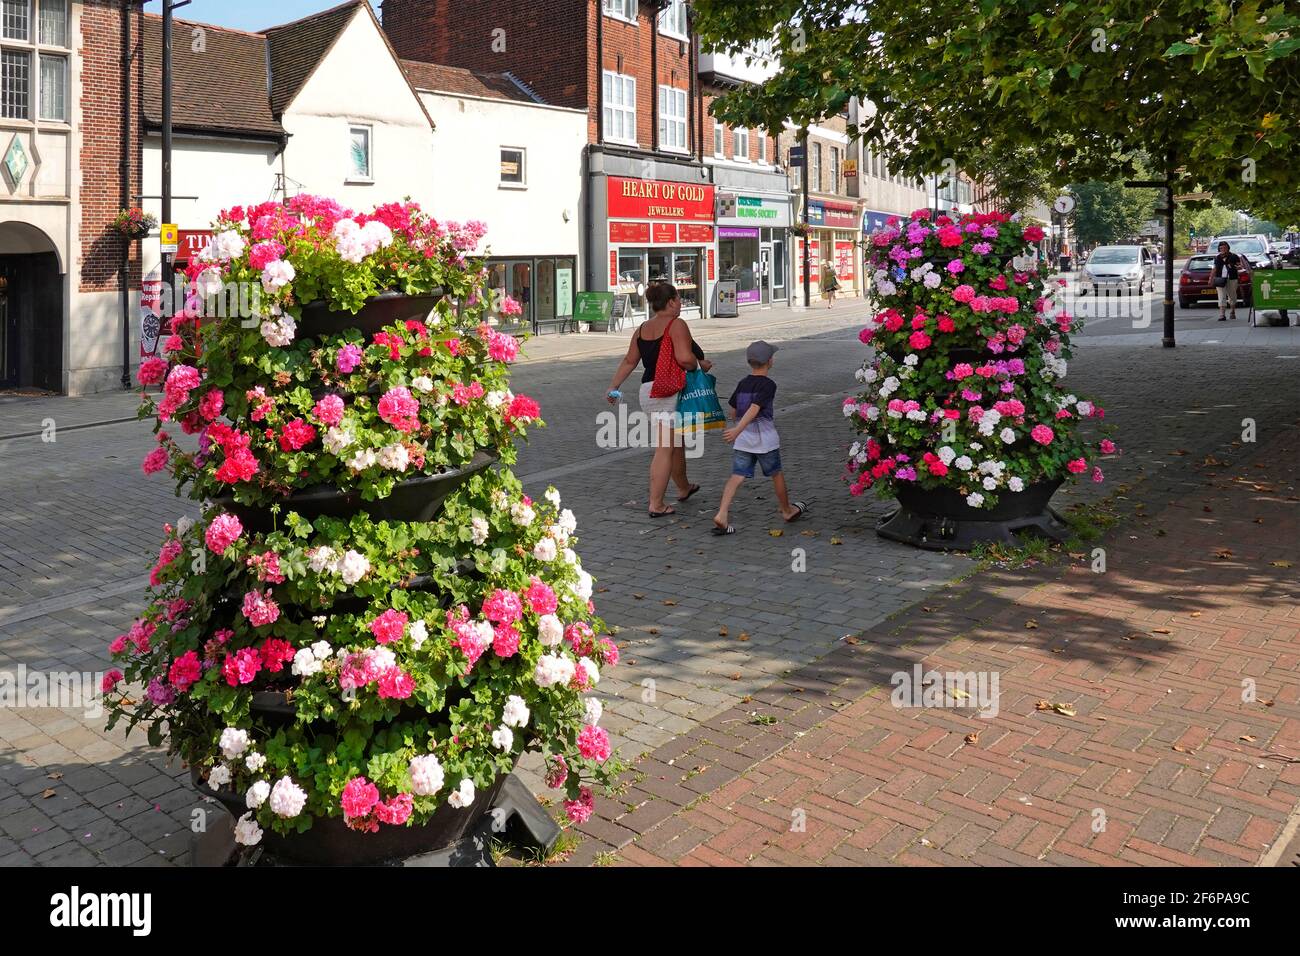 Mutter hält Covid 19 Coronavirus Gesichtsmaske in der Hand gehen Mit jungen Sommerblumen in fast verlassenen Brentwood Shopping High Street Essex Großbritannien Stockfoto